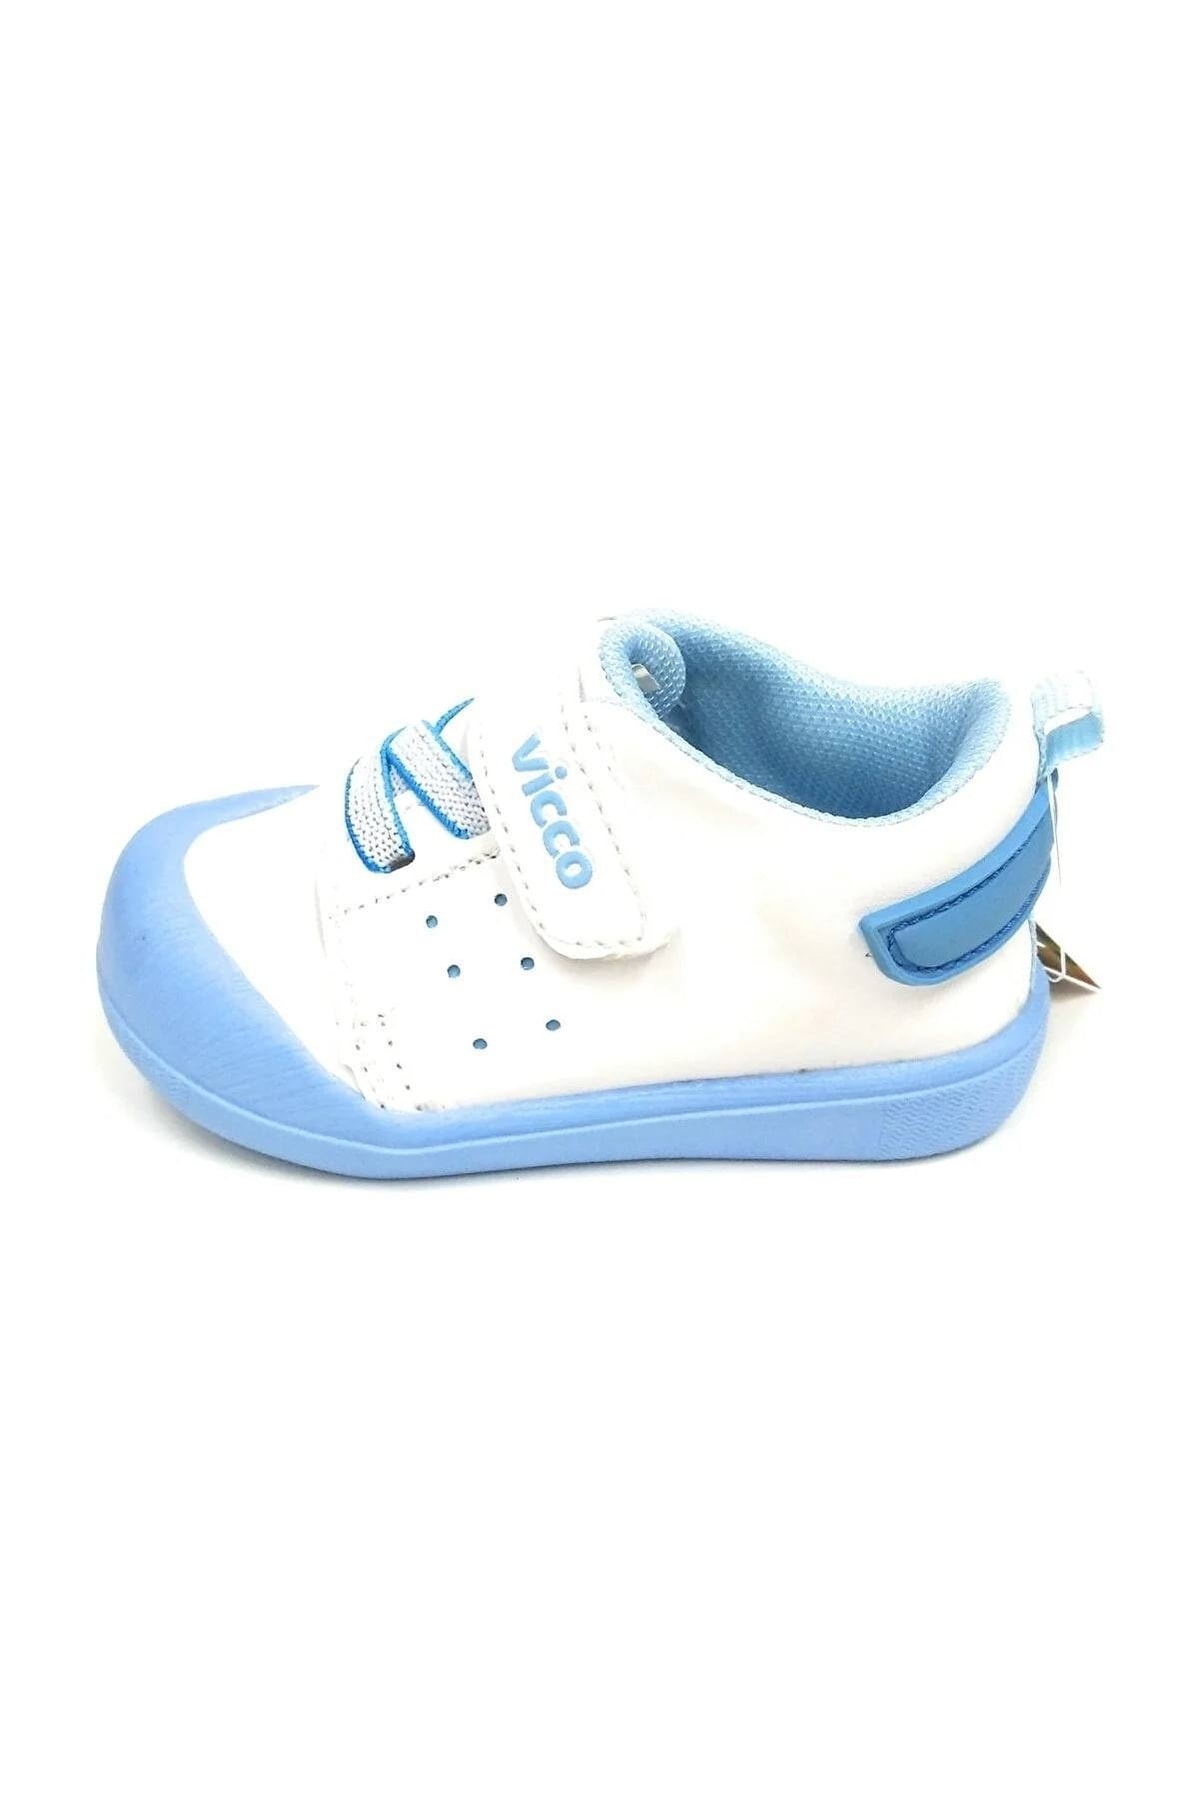 Vicco Oli Ortopedik Unisex Beyaz Mavi Bebek Ilkadım Ayakkabısı